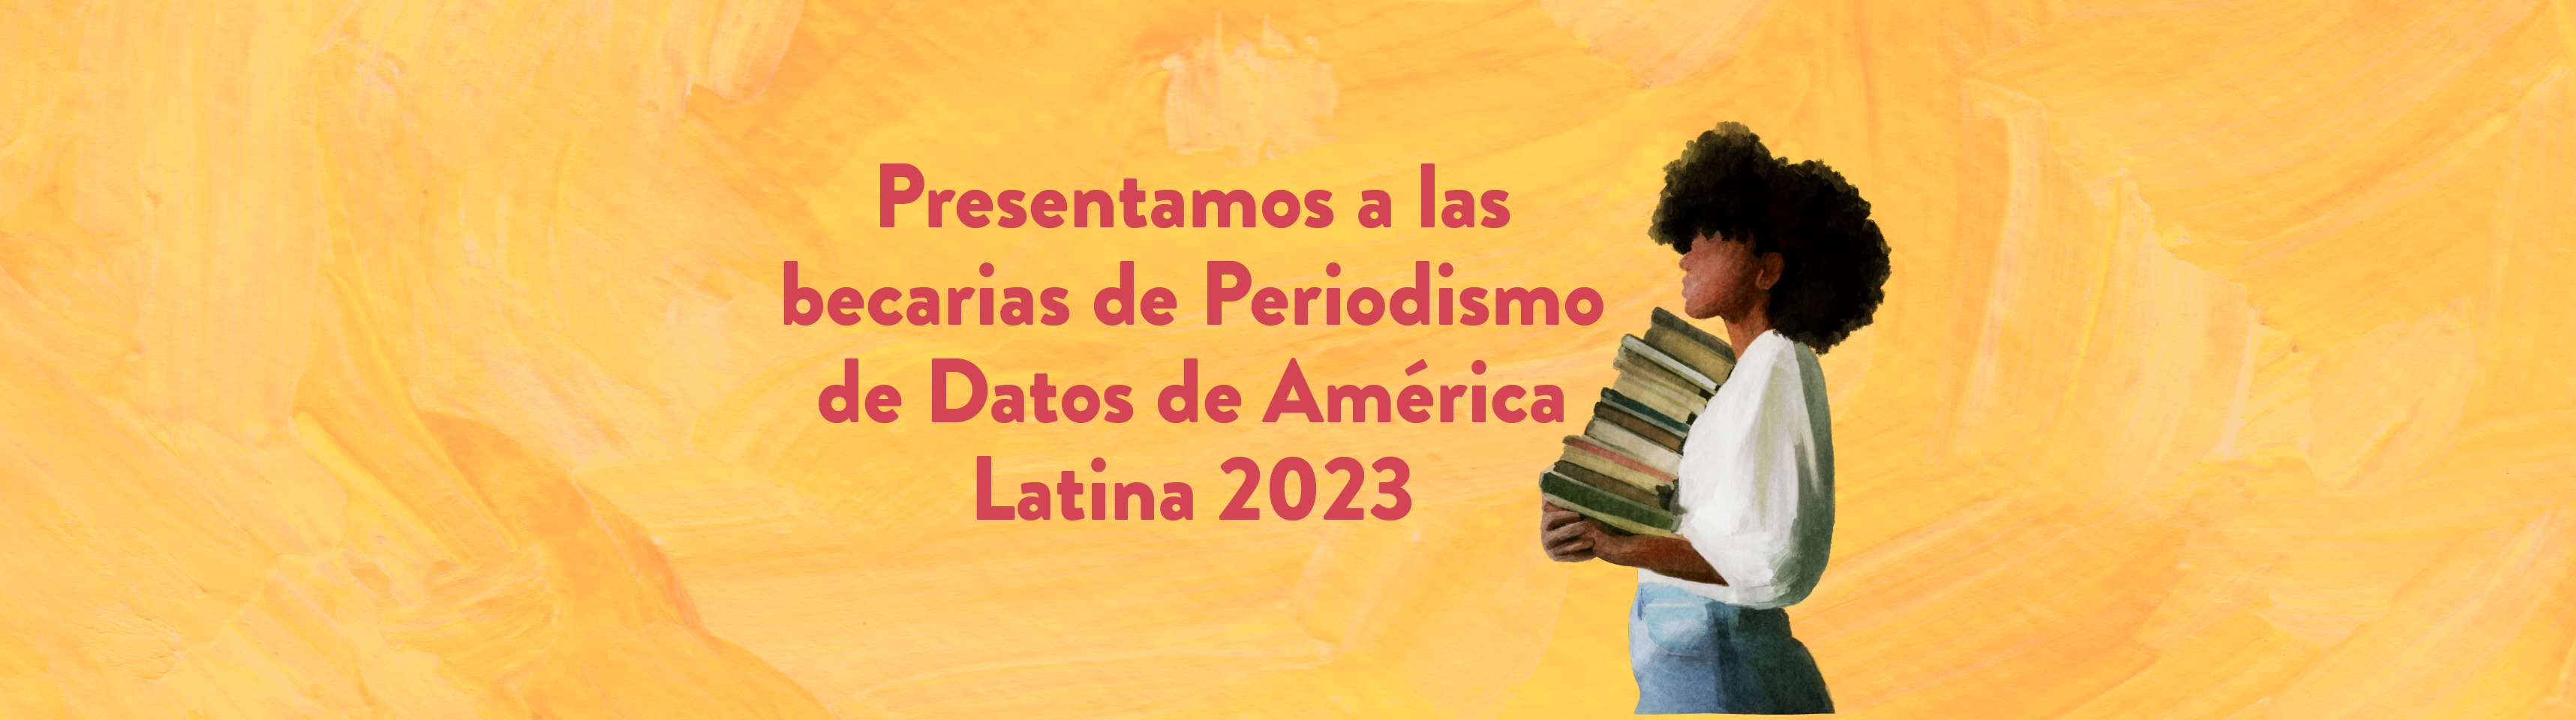 Presentamos a las becarias de Periodismo de Datos de América Latina 2023   